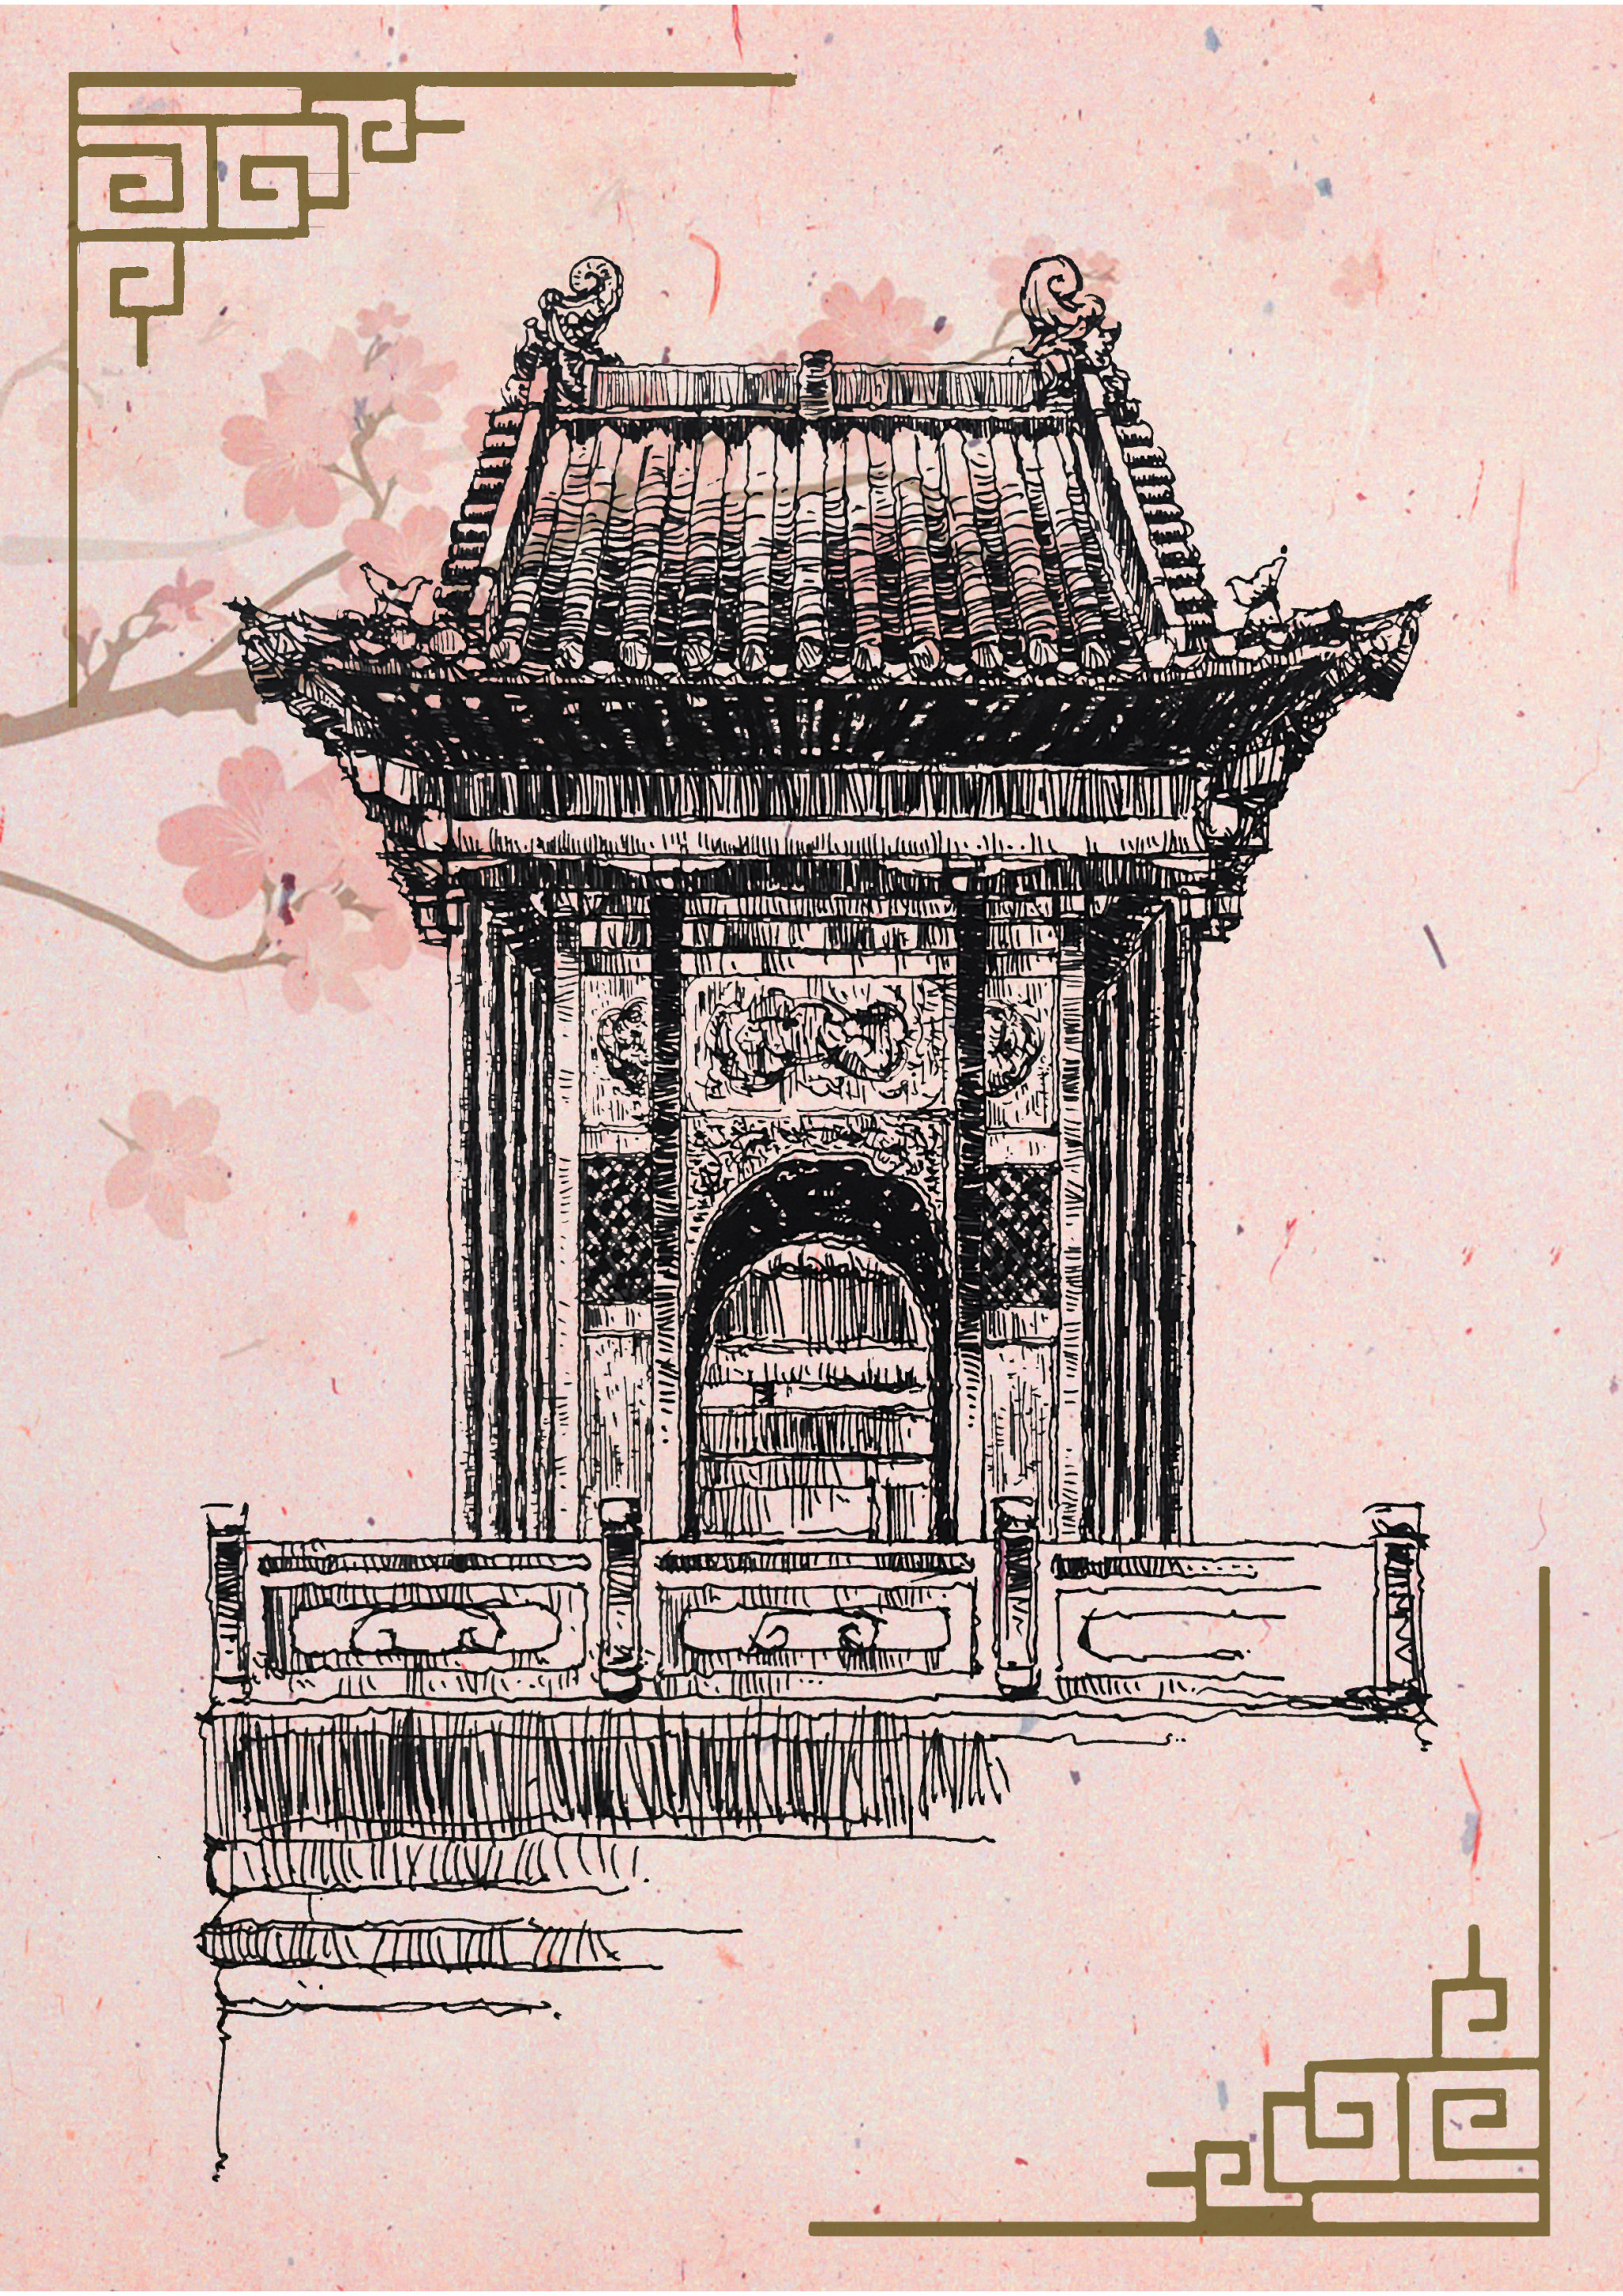 中国古代建筑钢笔画图片